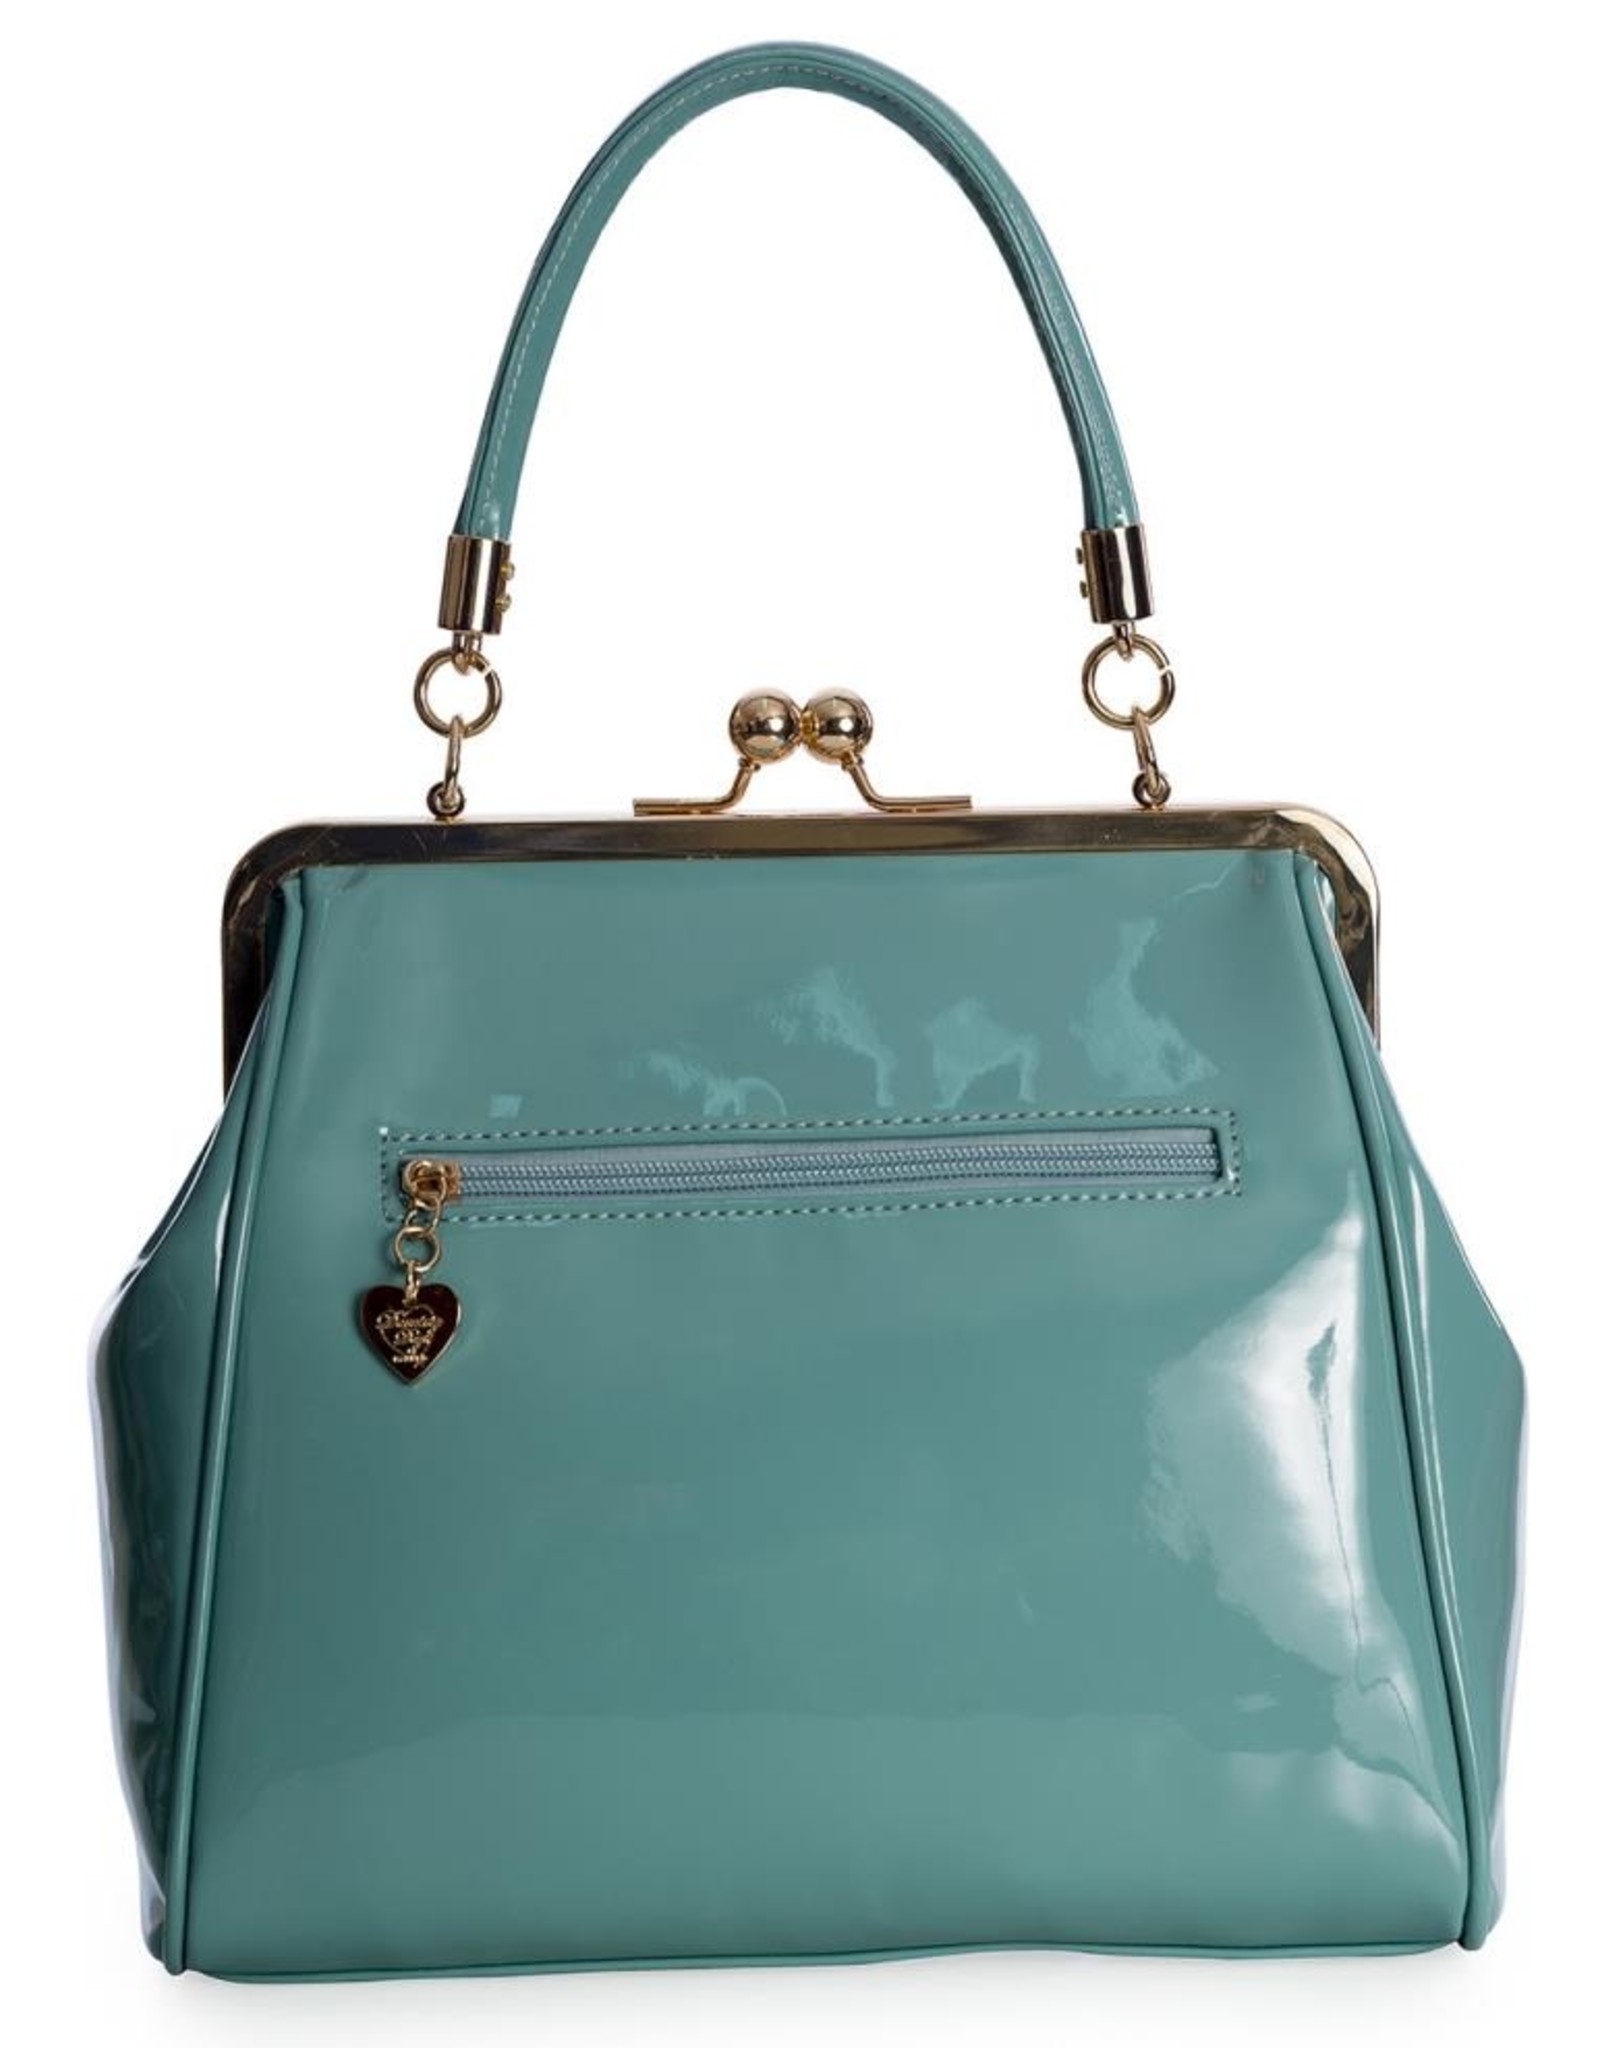 Simple Navy Blue Purse Vintage Wooden Handle Retro Handbag Bag Snap Closure  Bag - Etsy | Blue leather clutch, Navy blue purse, Leather clutch